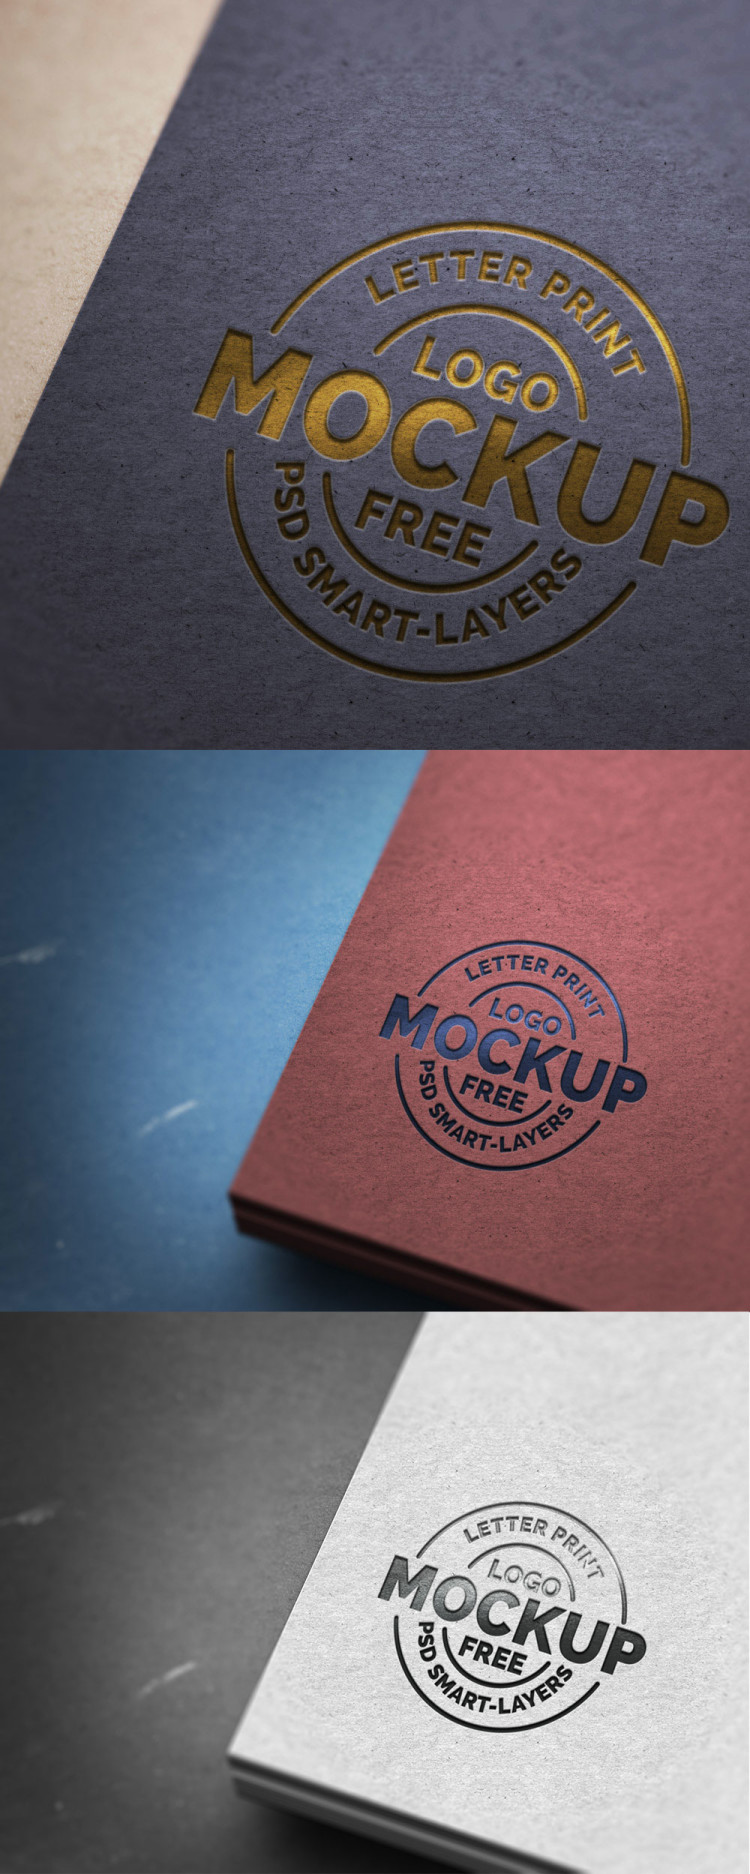 letter-print-logo-mockup-psd-full-view